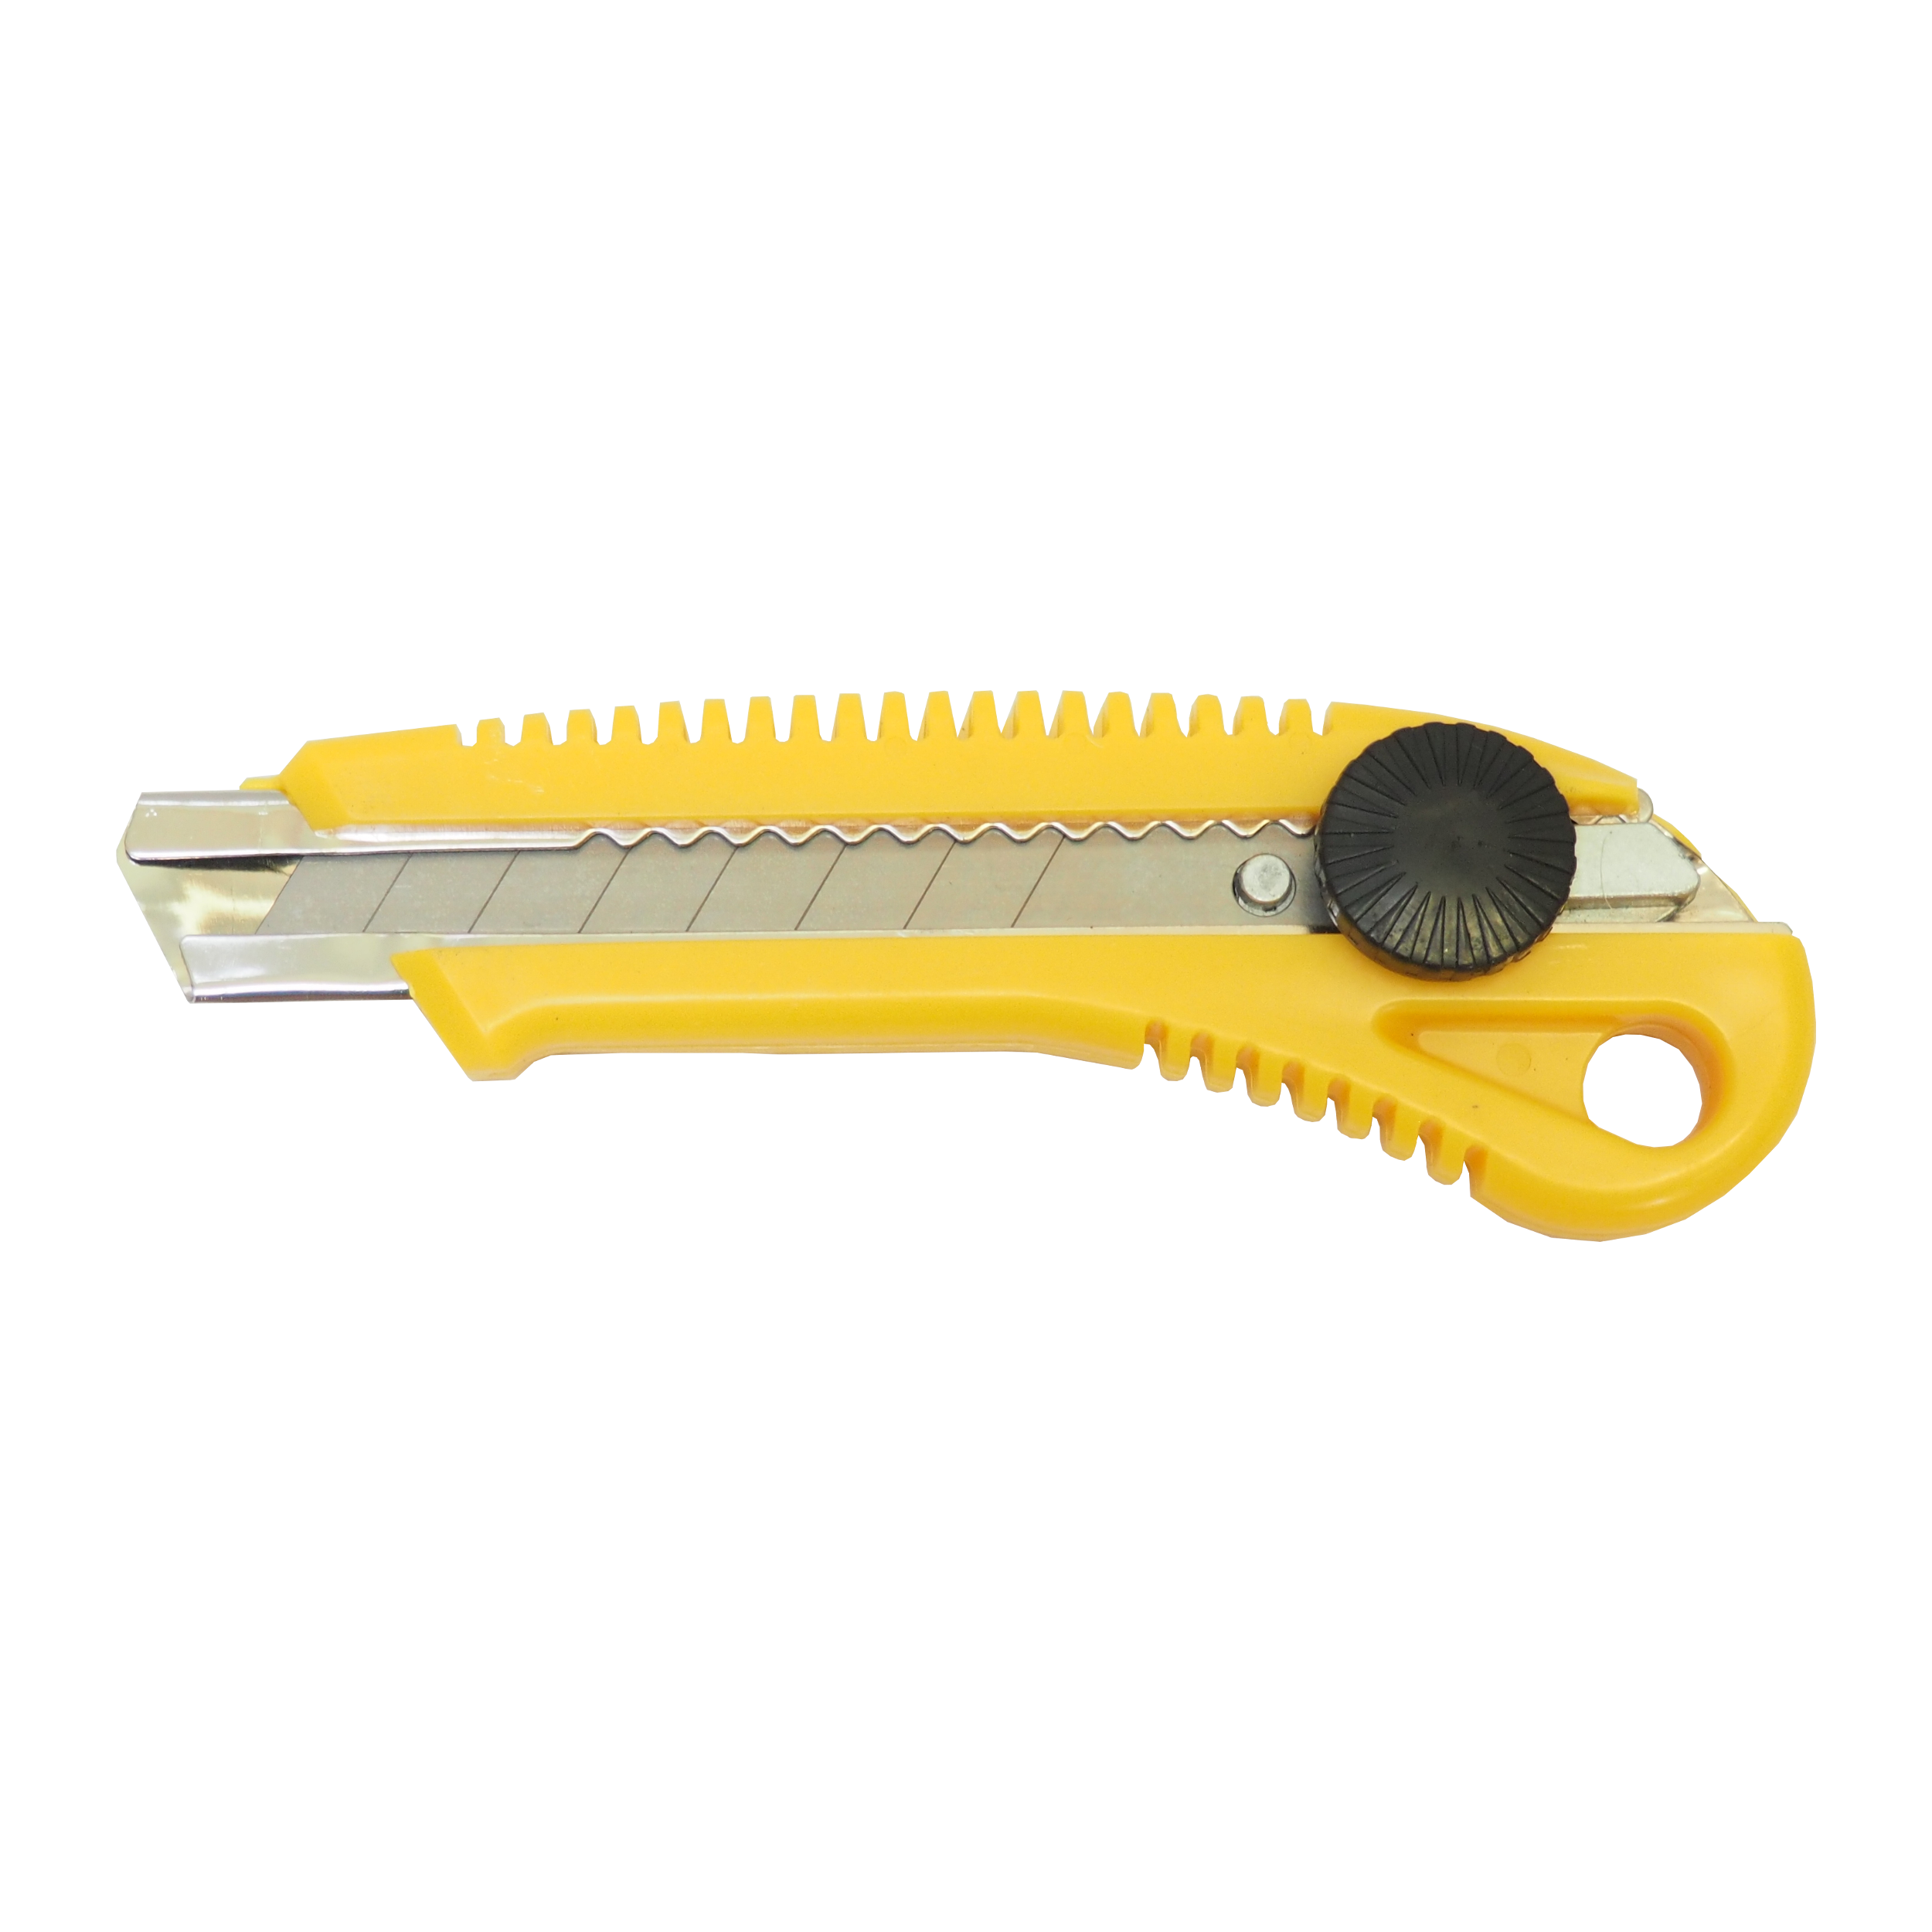 TOPTRADE nůž odlamovací, plastový, s kovovou výztuhou a šroubovou aretací, 18 mm 0.07 Kg TOP Sklad4 200207 91